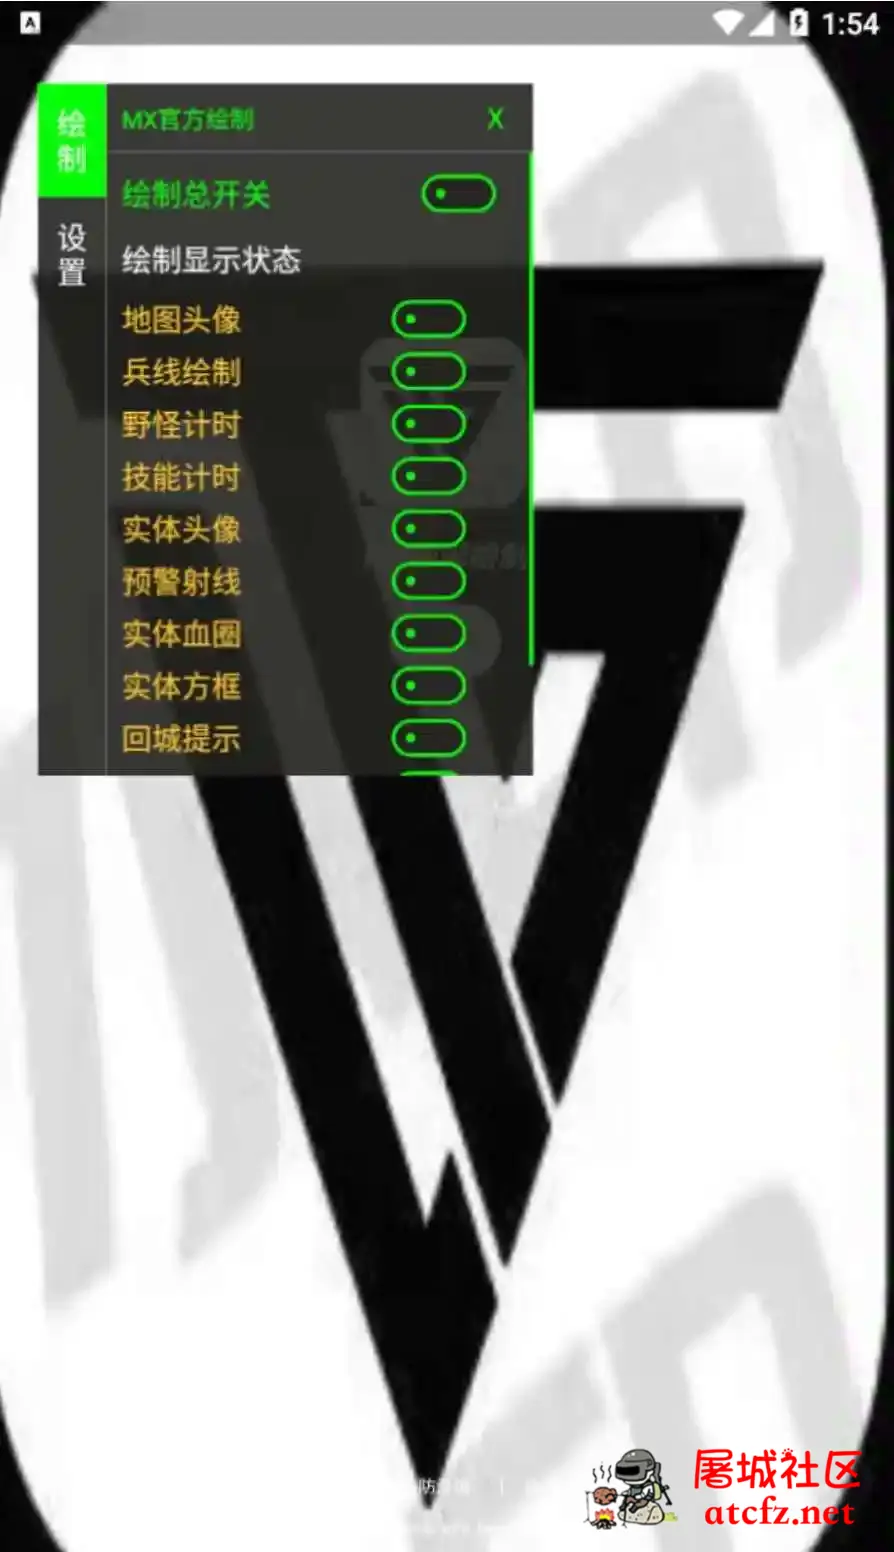 王者荣耀MX绘制透视CD野怪计时插件破解版 屠城辅助网www.tcfz1.com3196